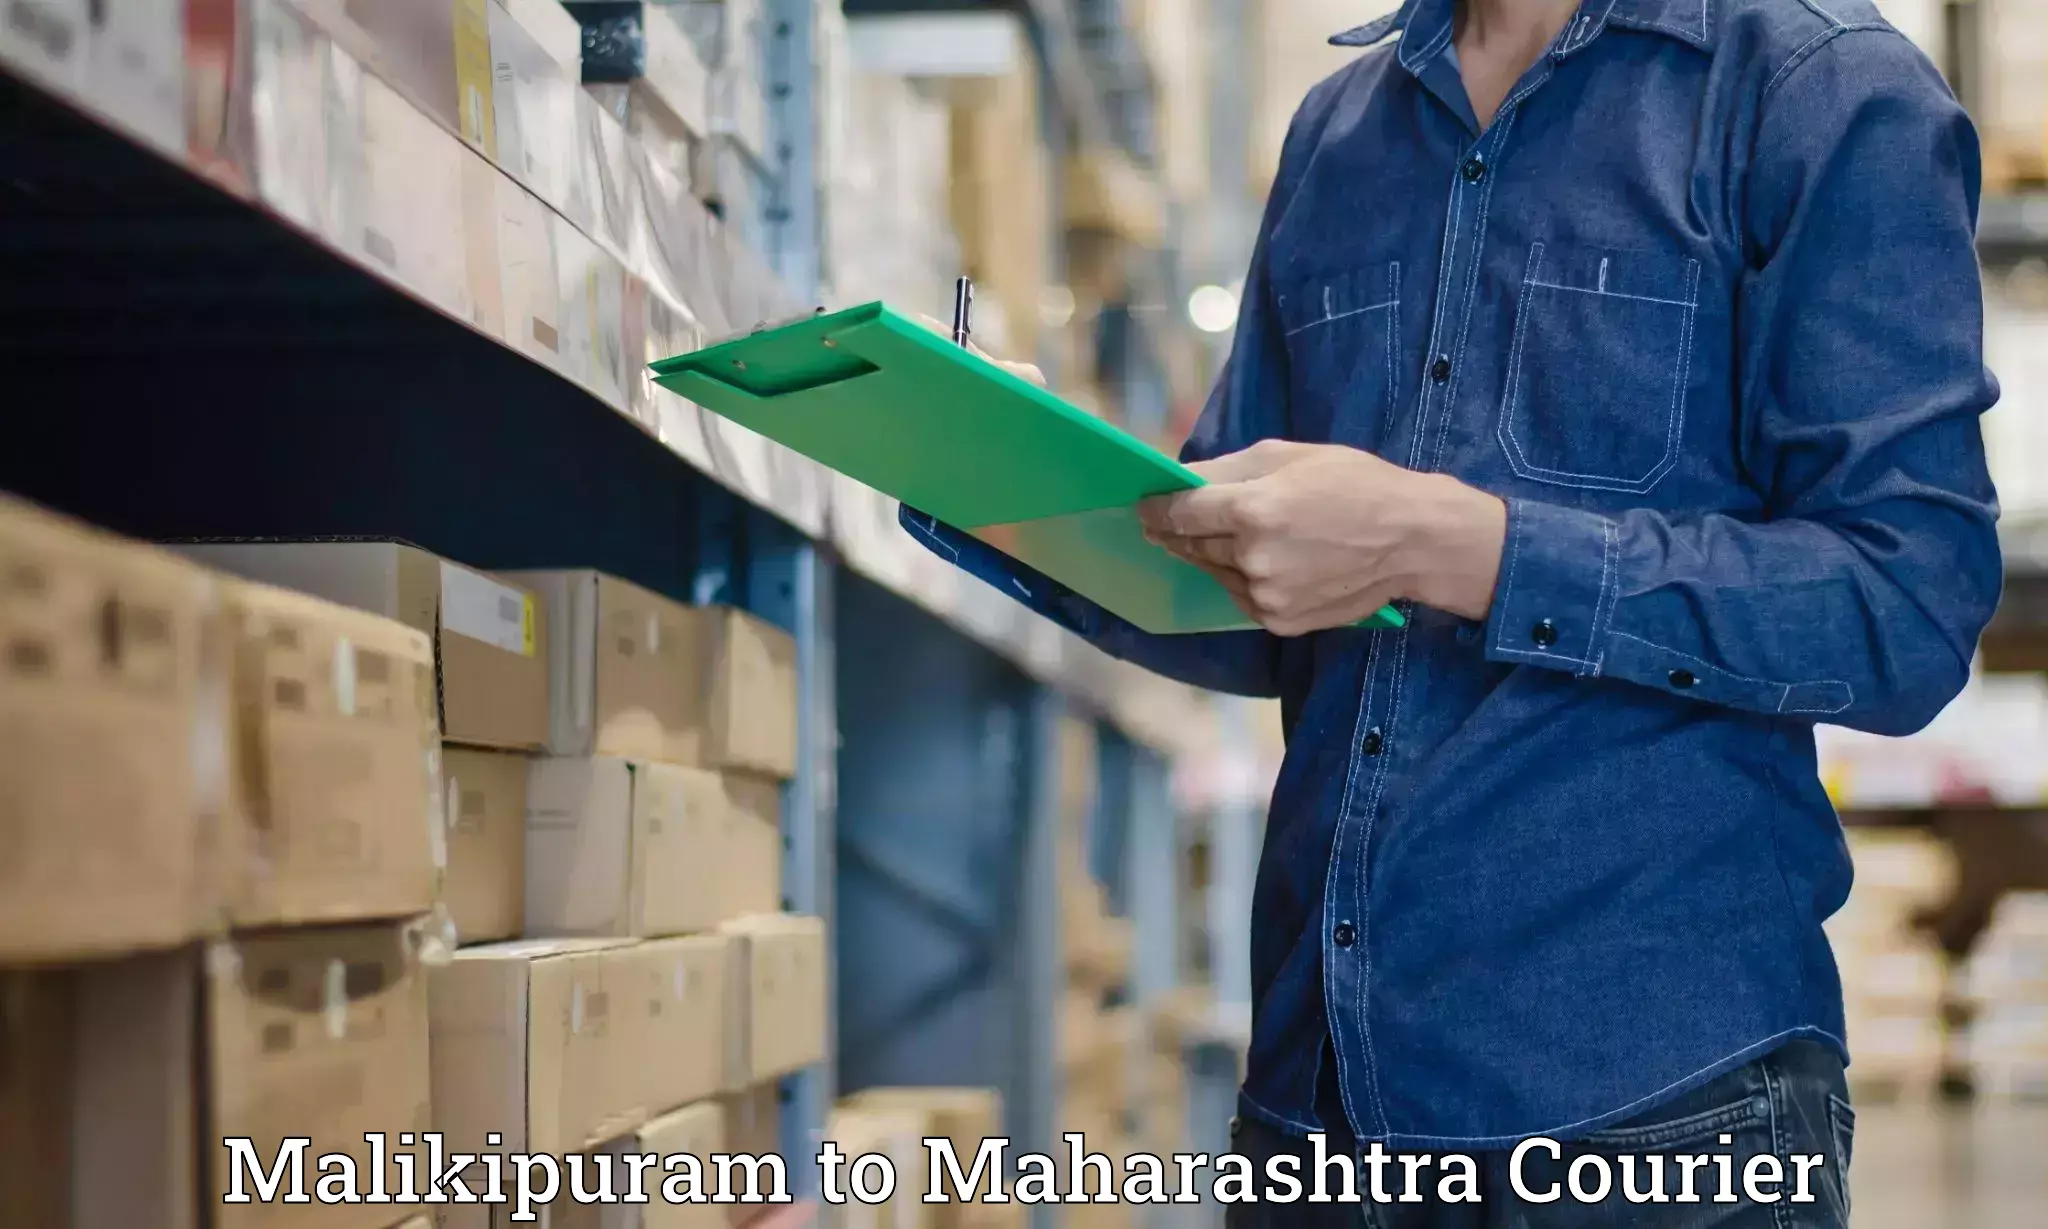 Multi-city courier Malikipuram to Kale Kolhapur